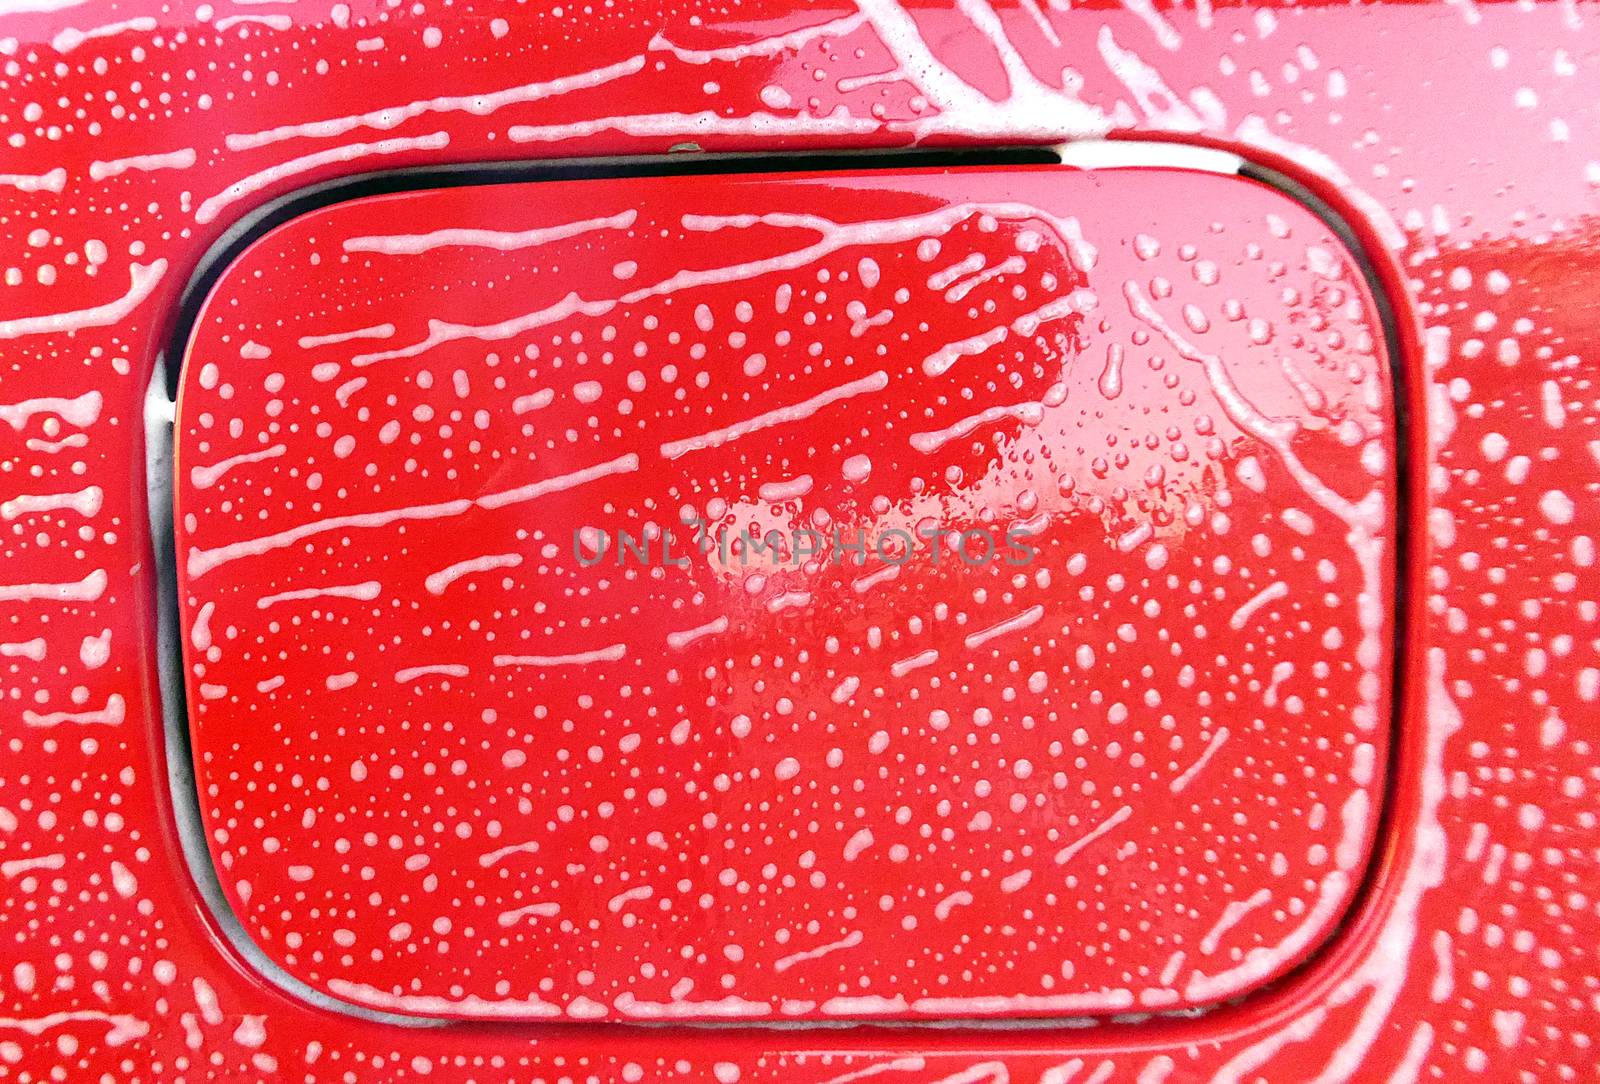 Washing car foam texture by nehru